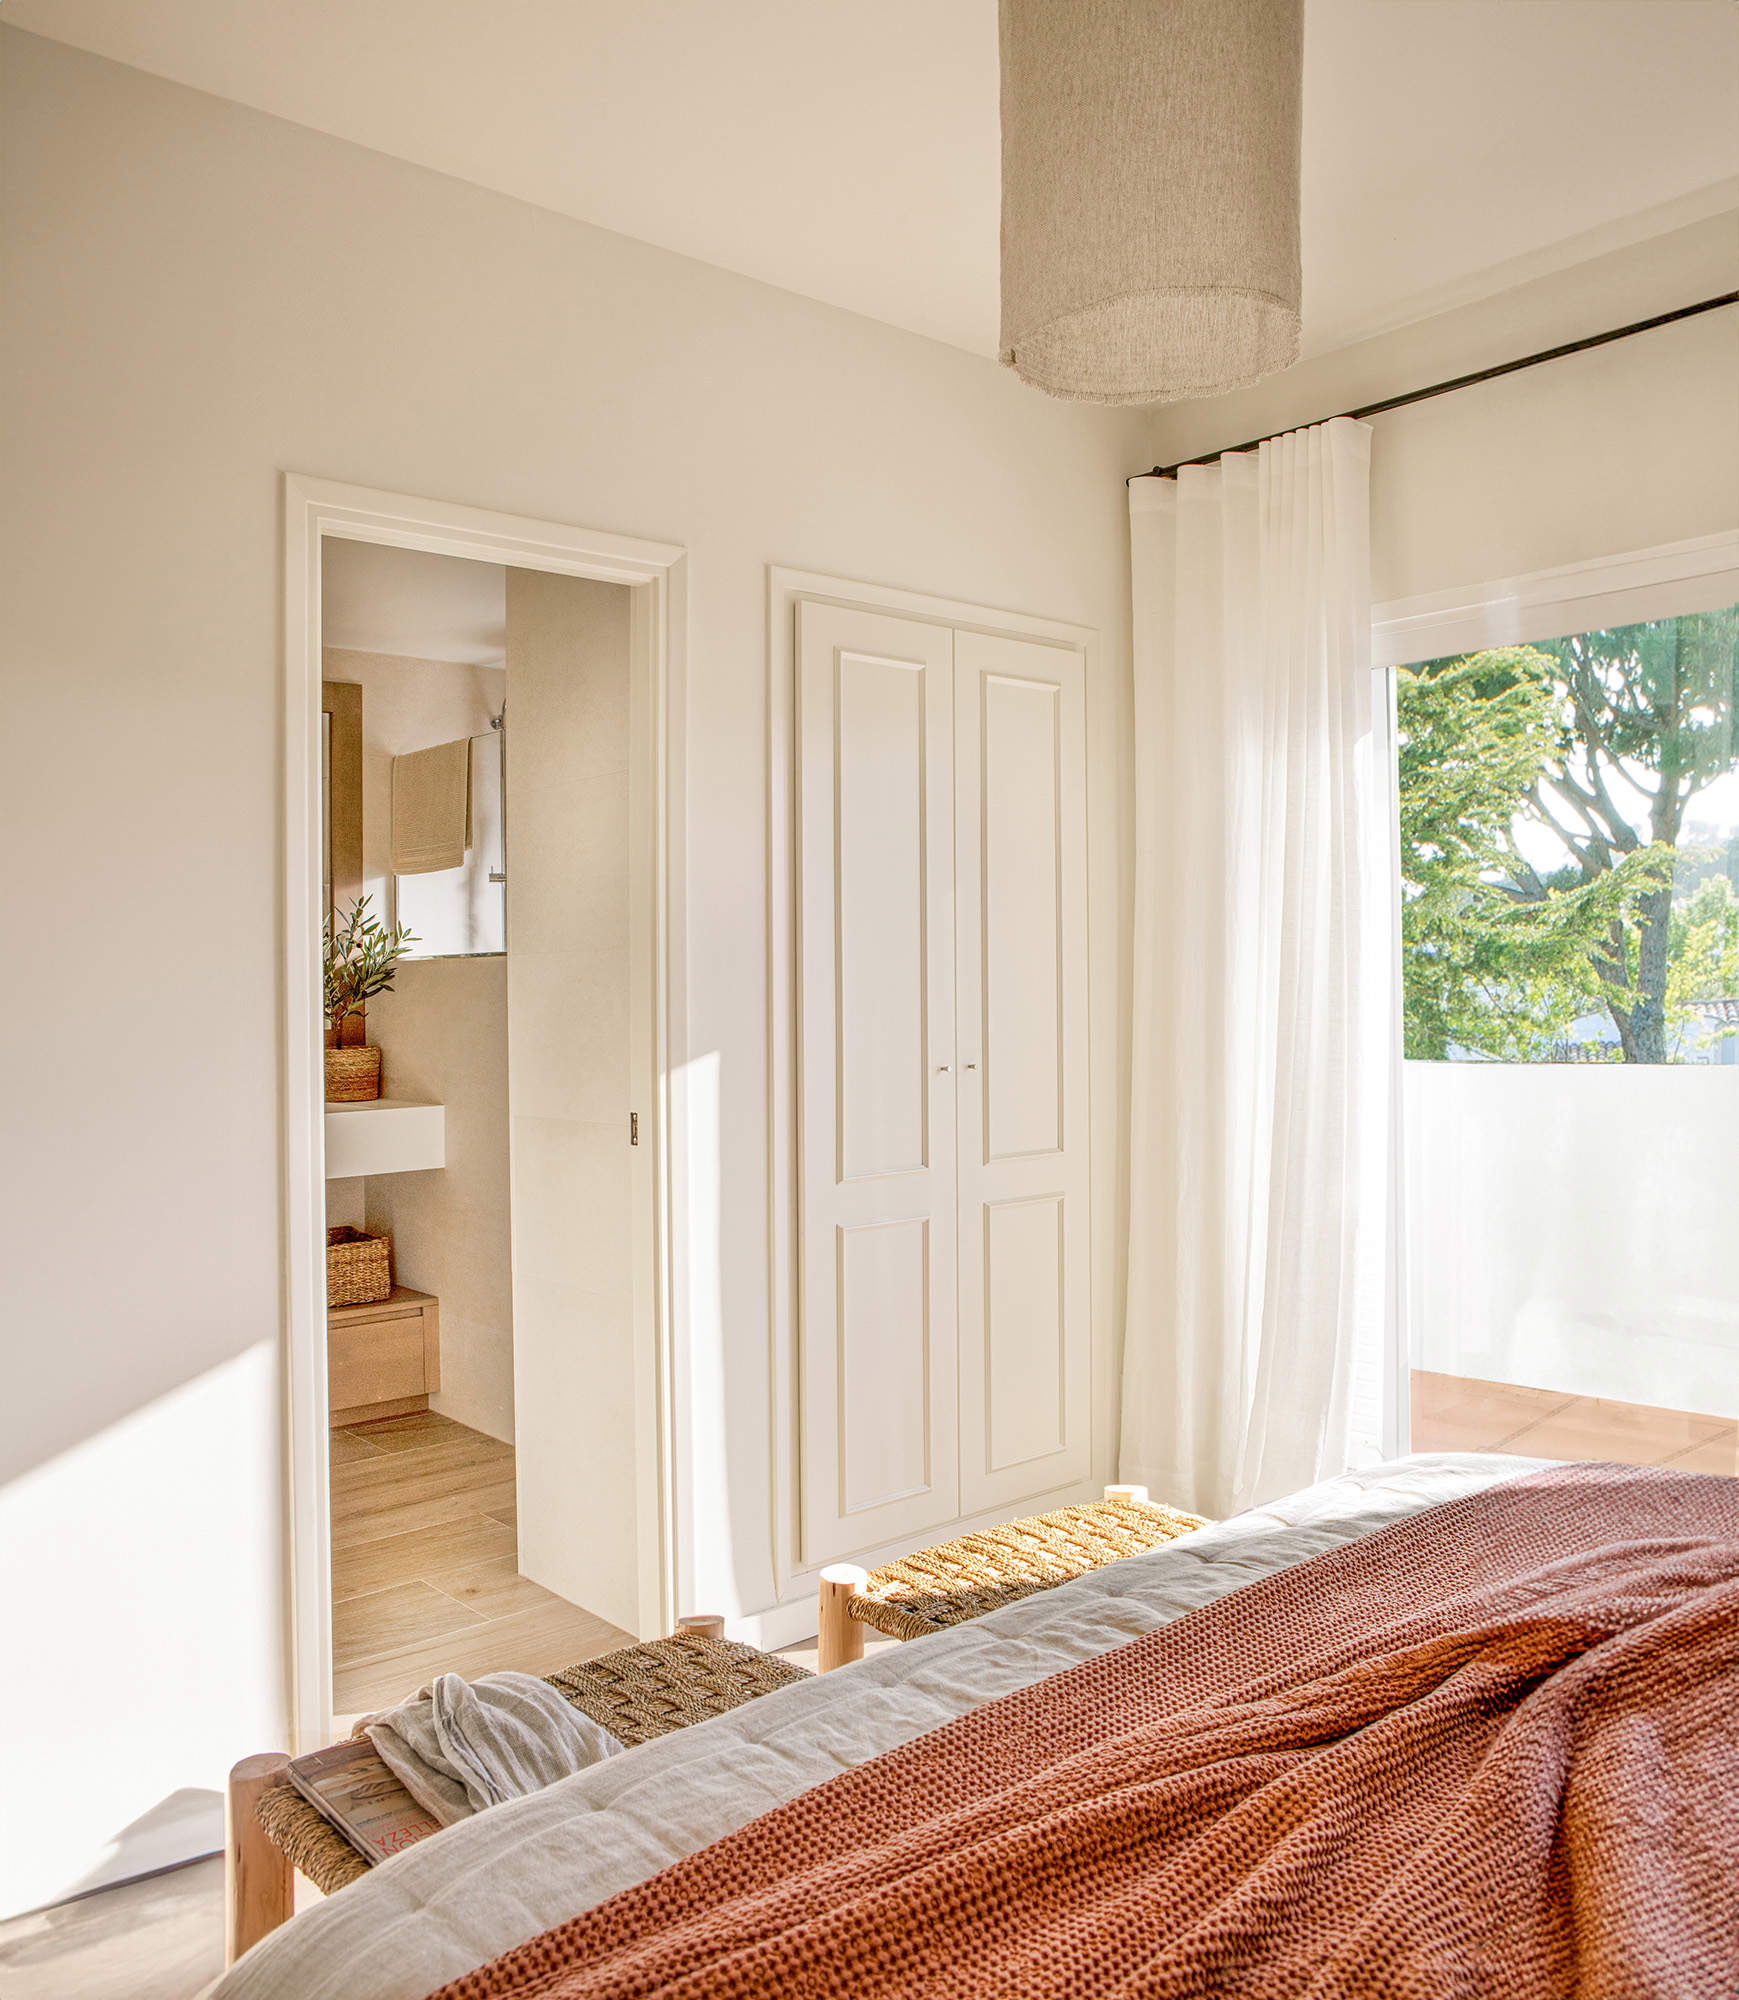 Dormitorio con visillo en la ventana y armario pequeño